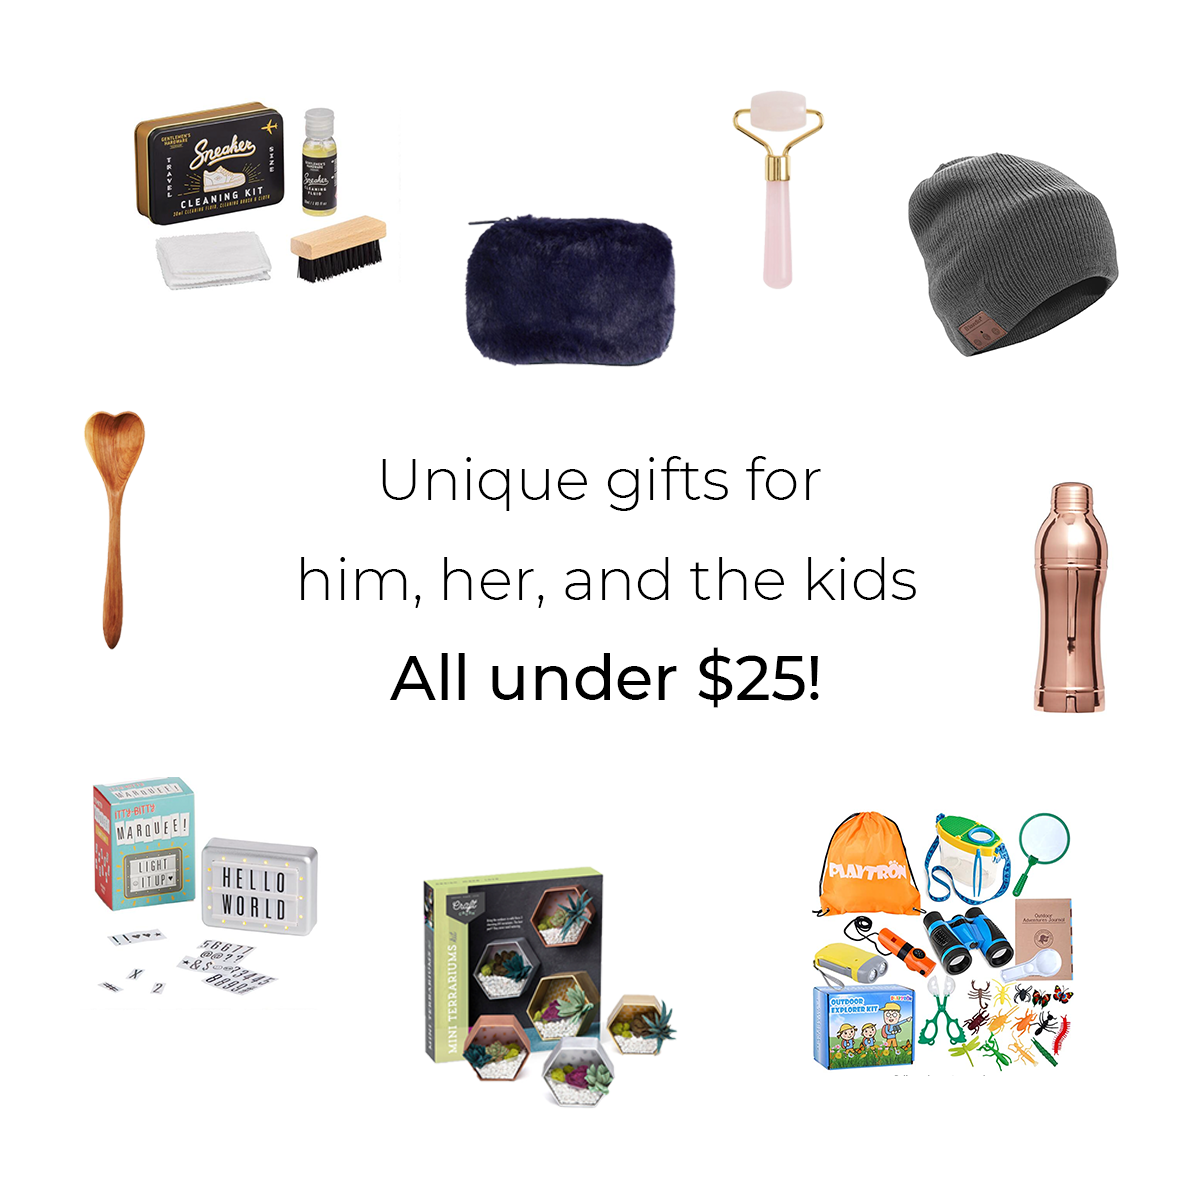 Gifts under $25 - By Lauren M